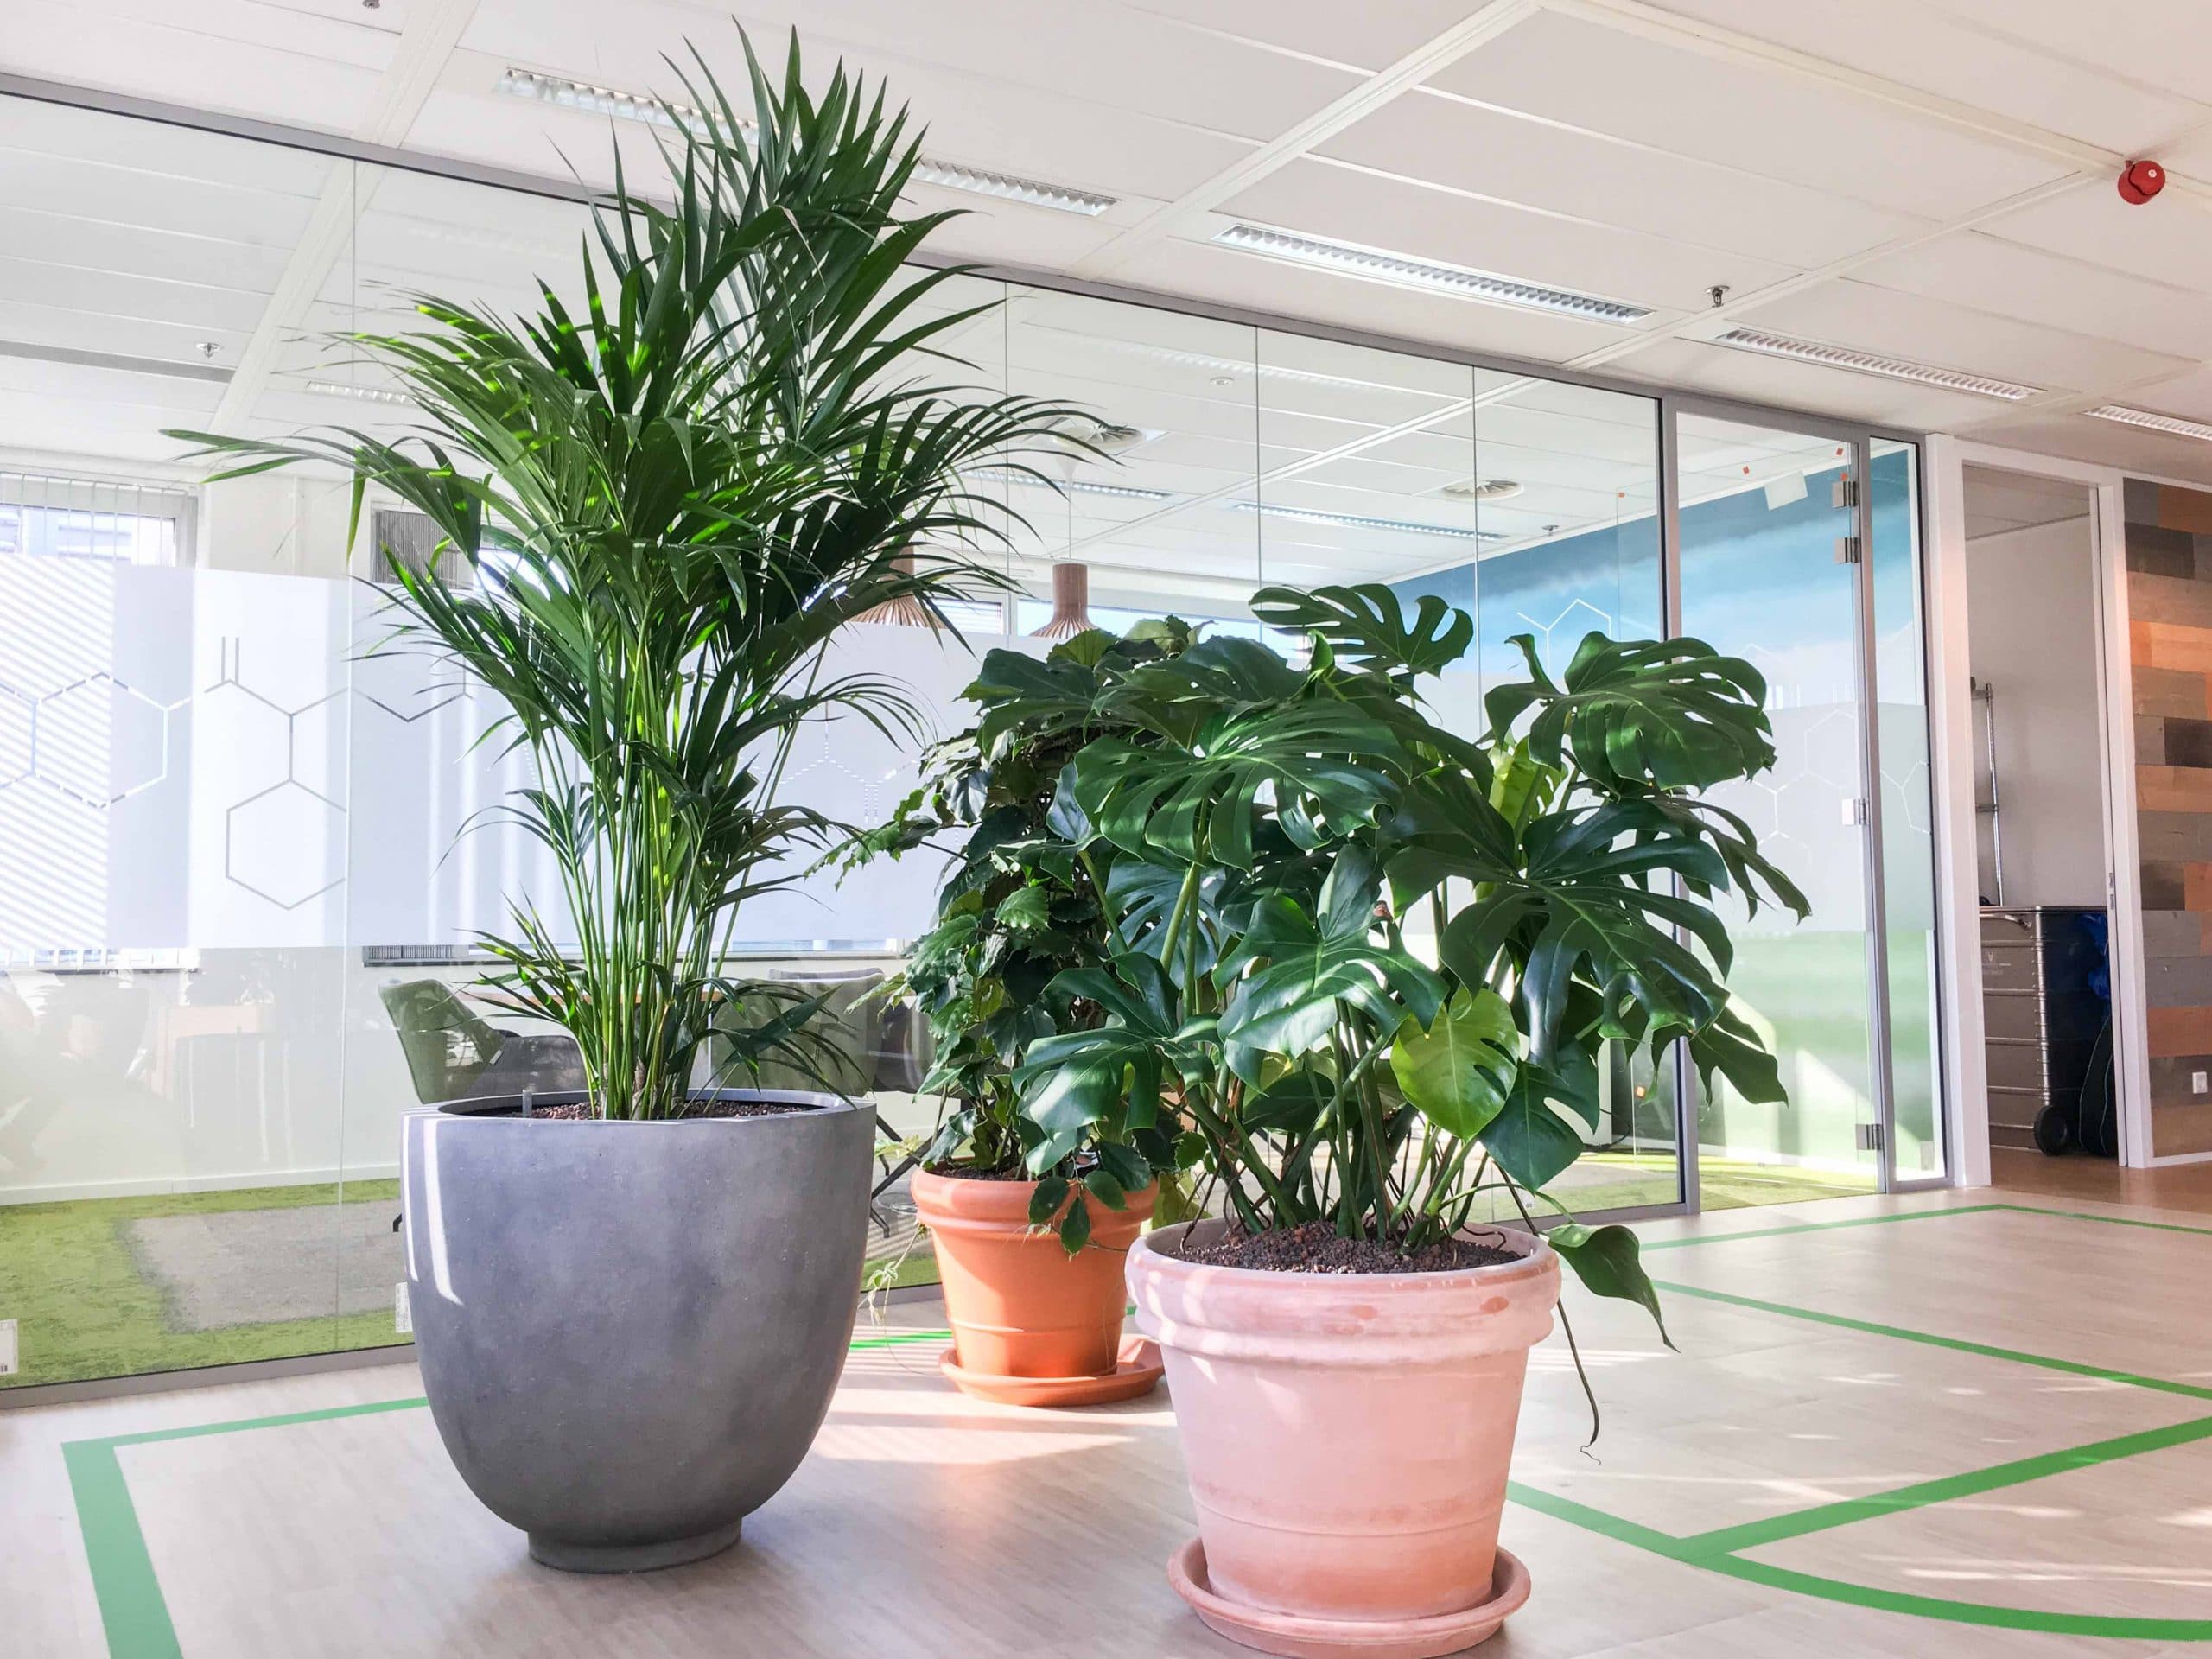 Verschillende planten in mix en match plantenbakken groen interieur kantoorbeplanting